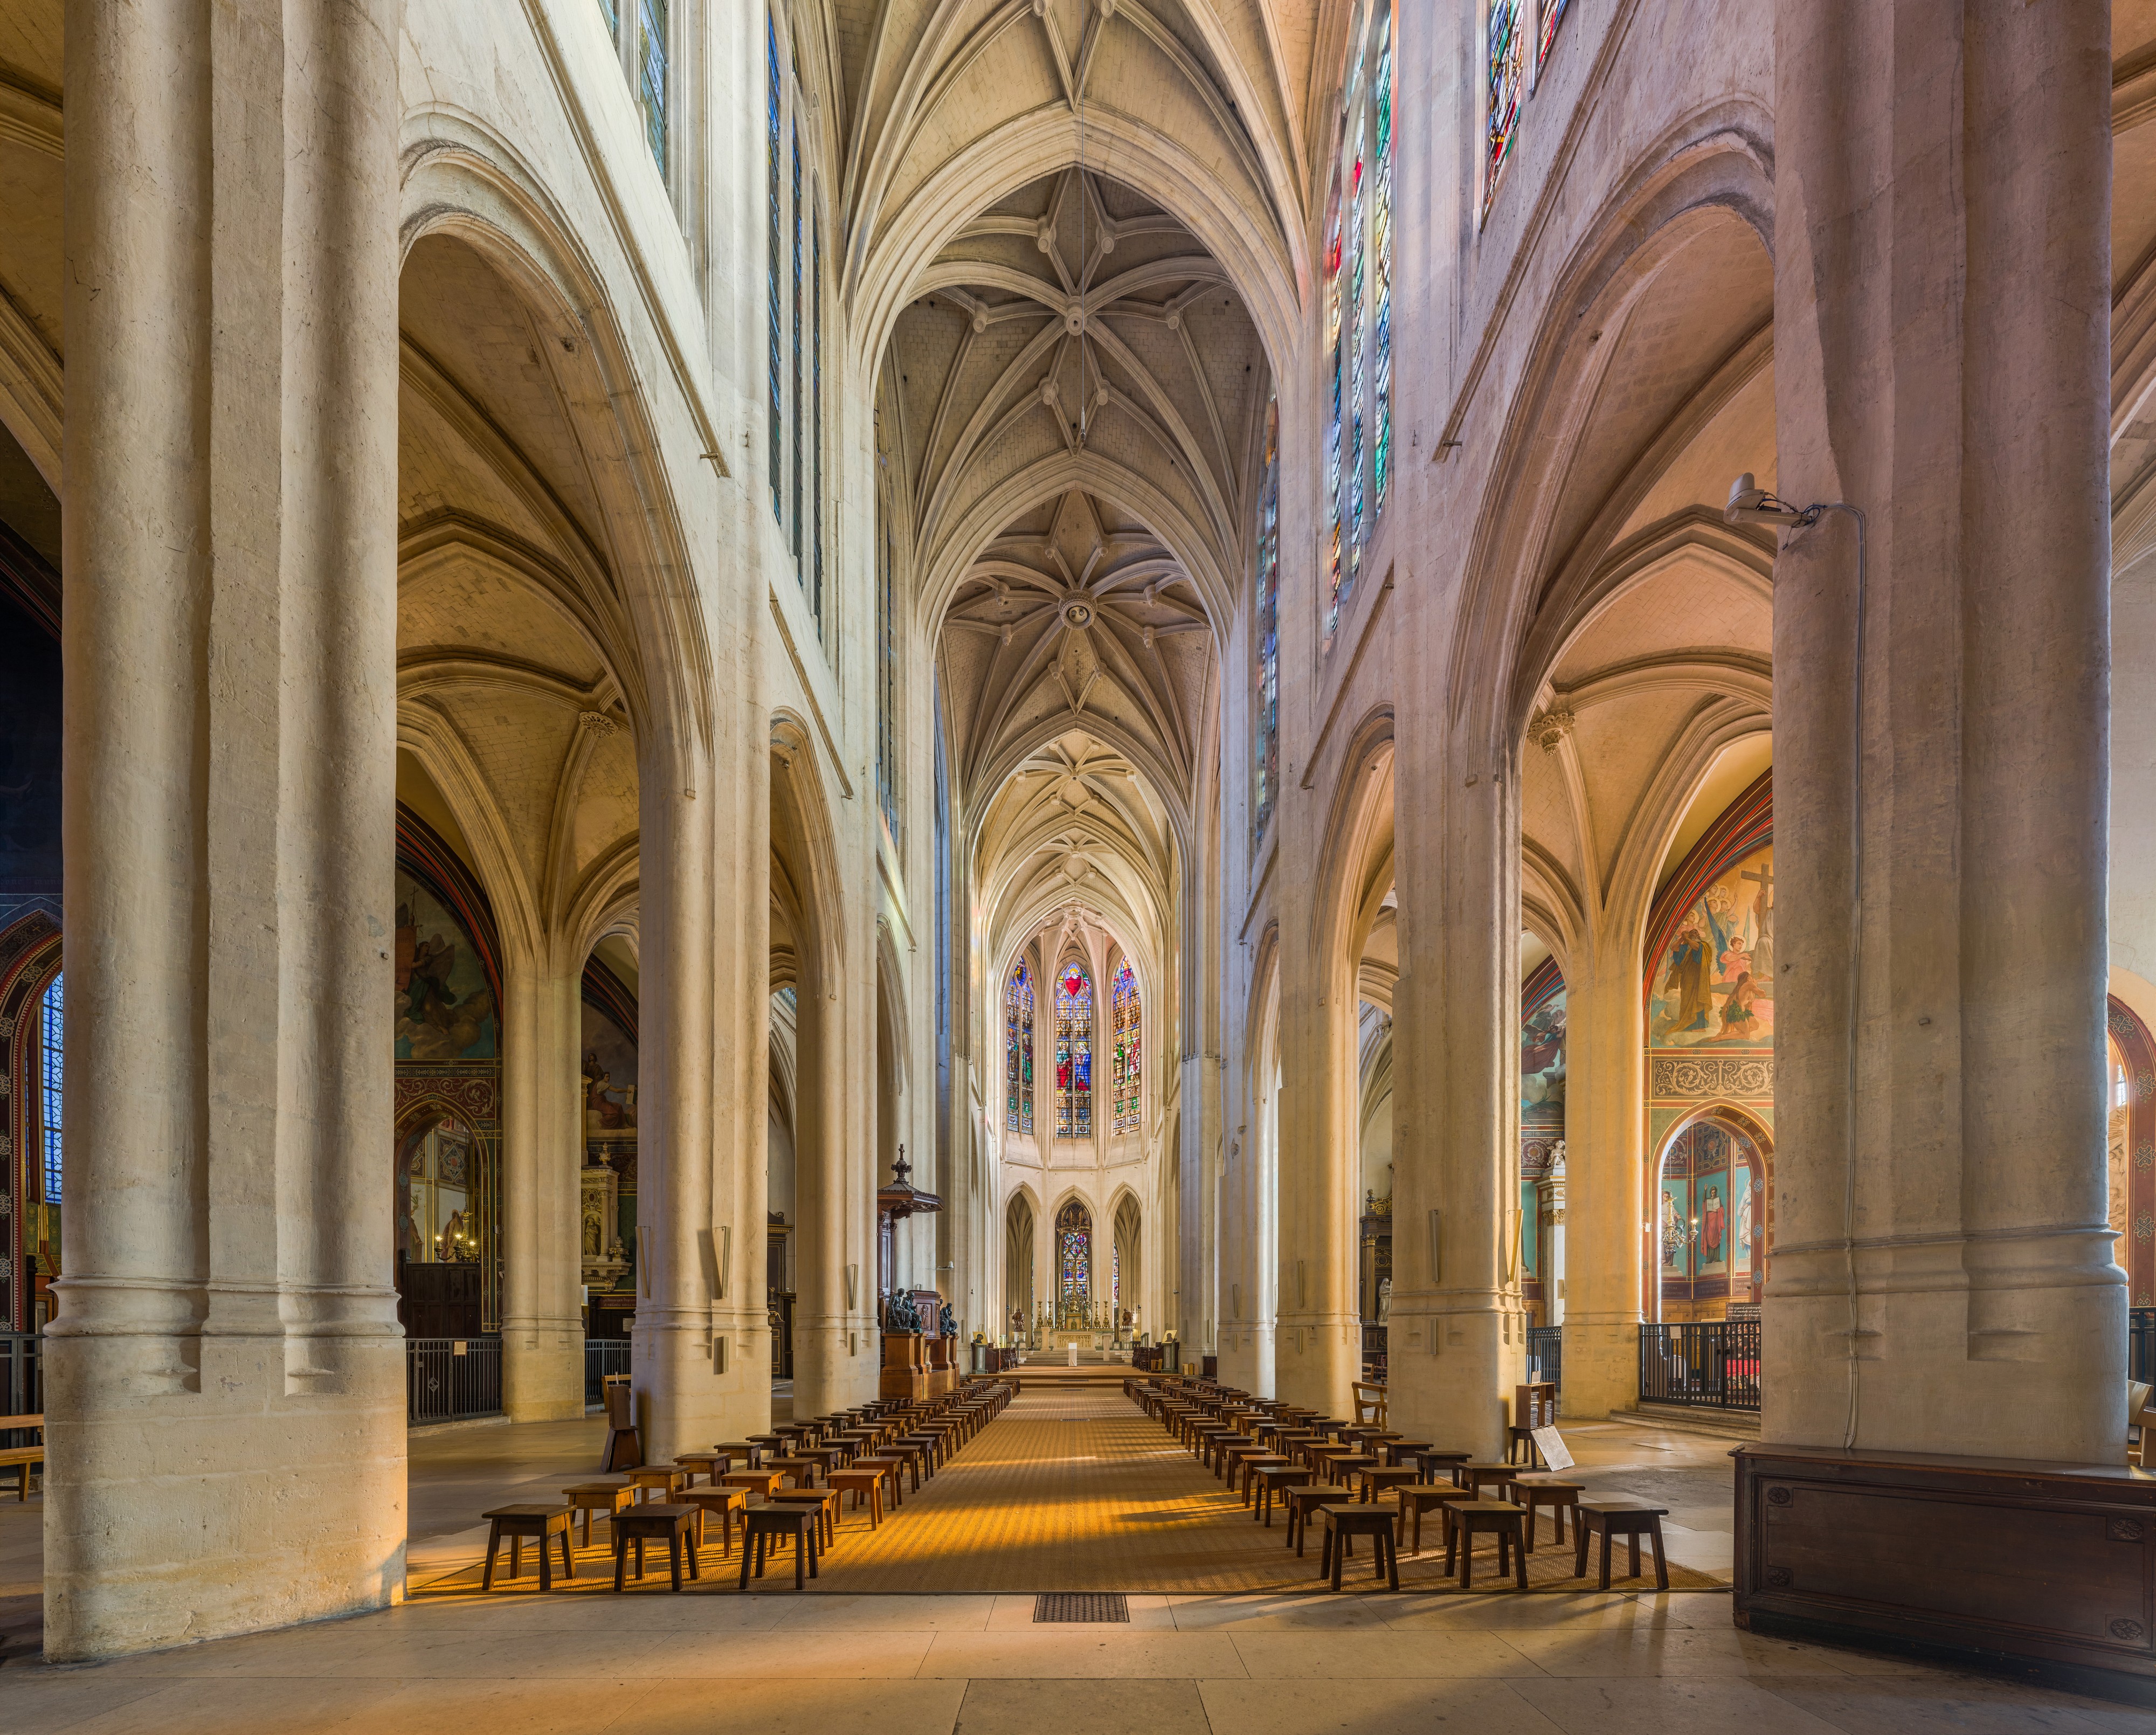 Church of St-Gervais-et-St-Protais Interior 1, Paris, France - Diliff